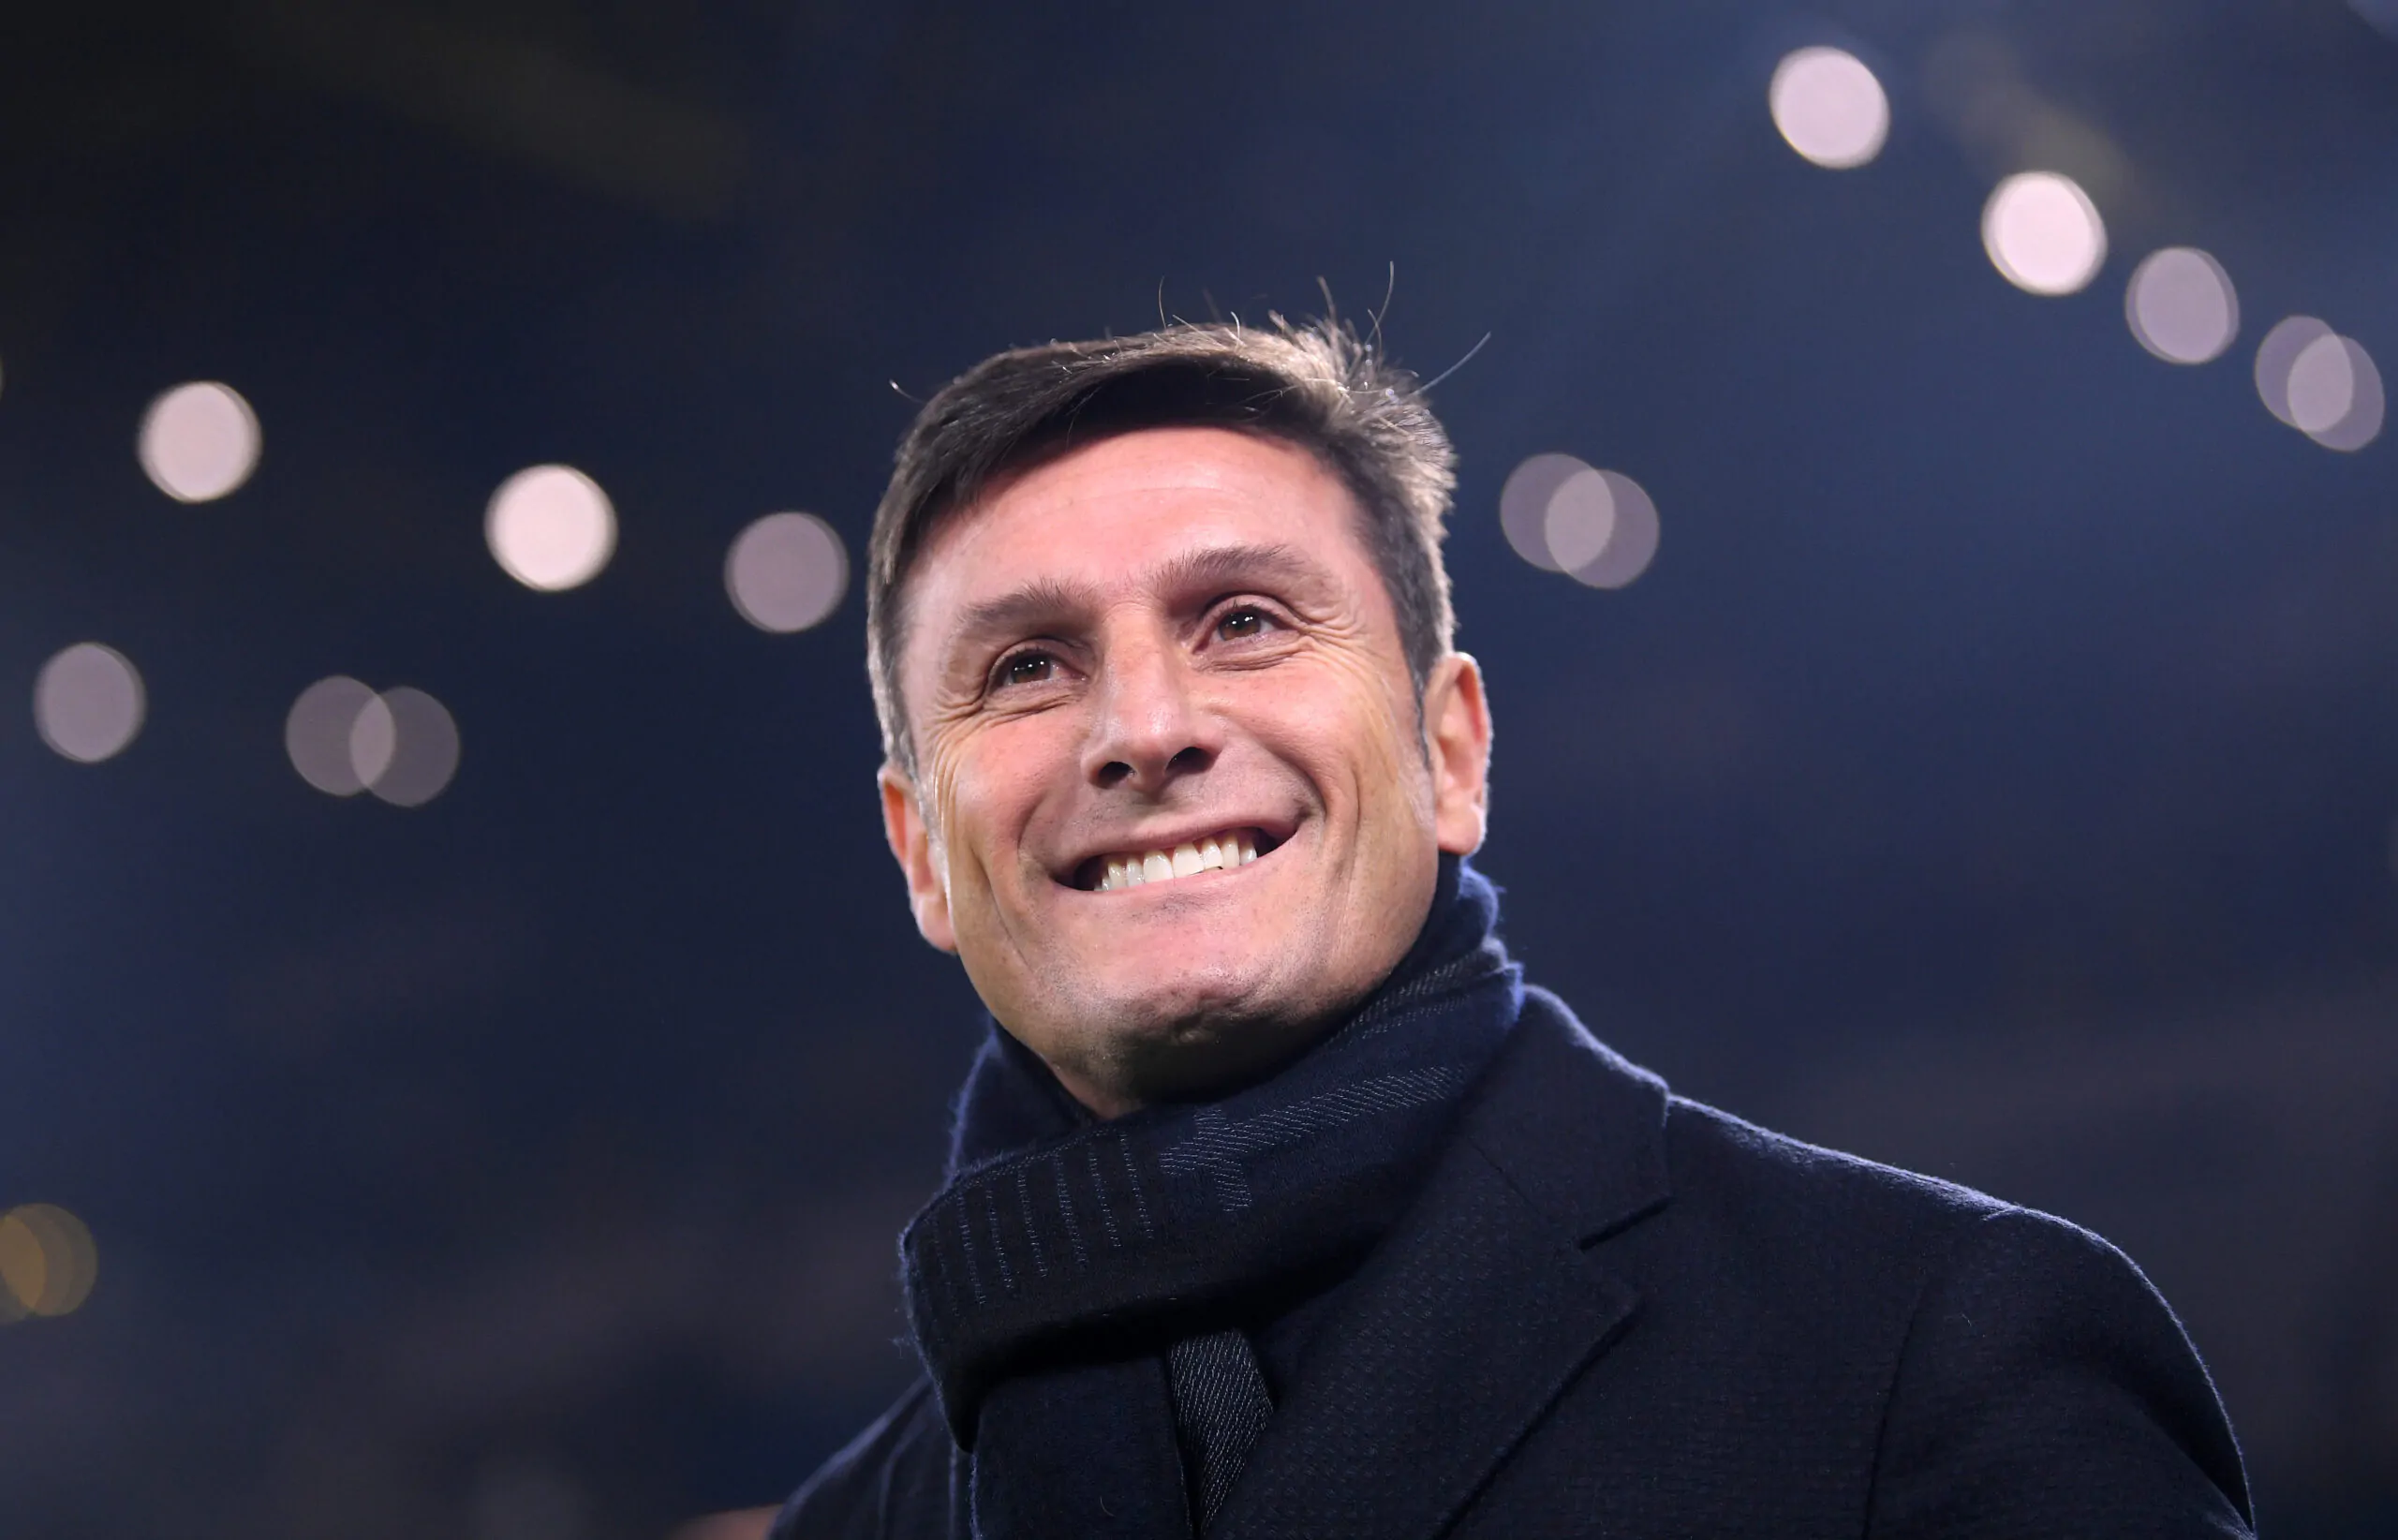 Calciopoli, frecciata di Zanetti alla Juve: “Lo abbiamo saputo dopo!”